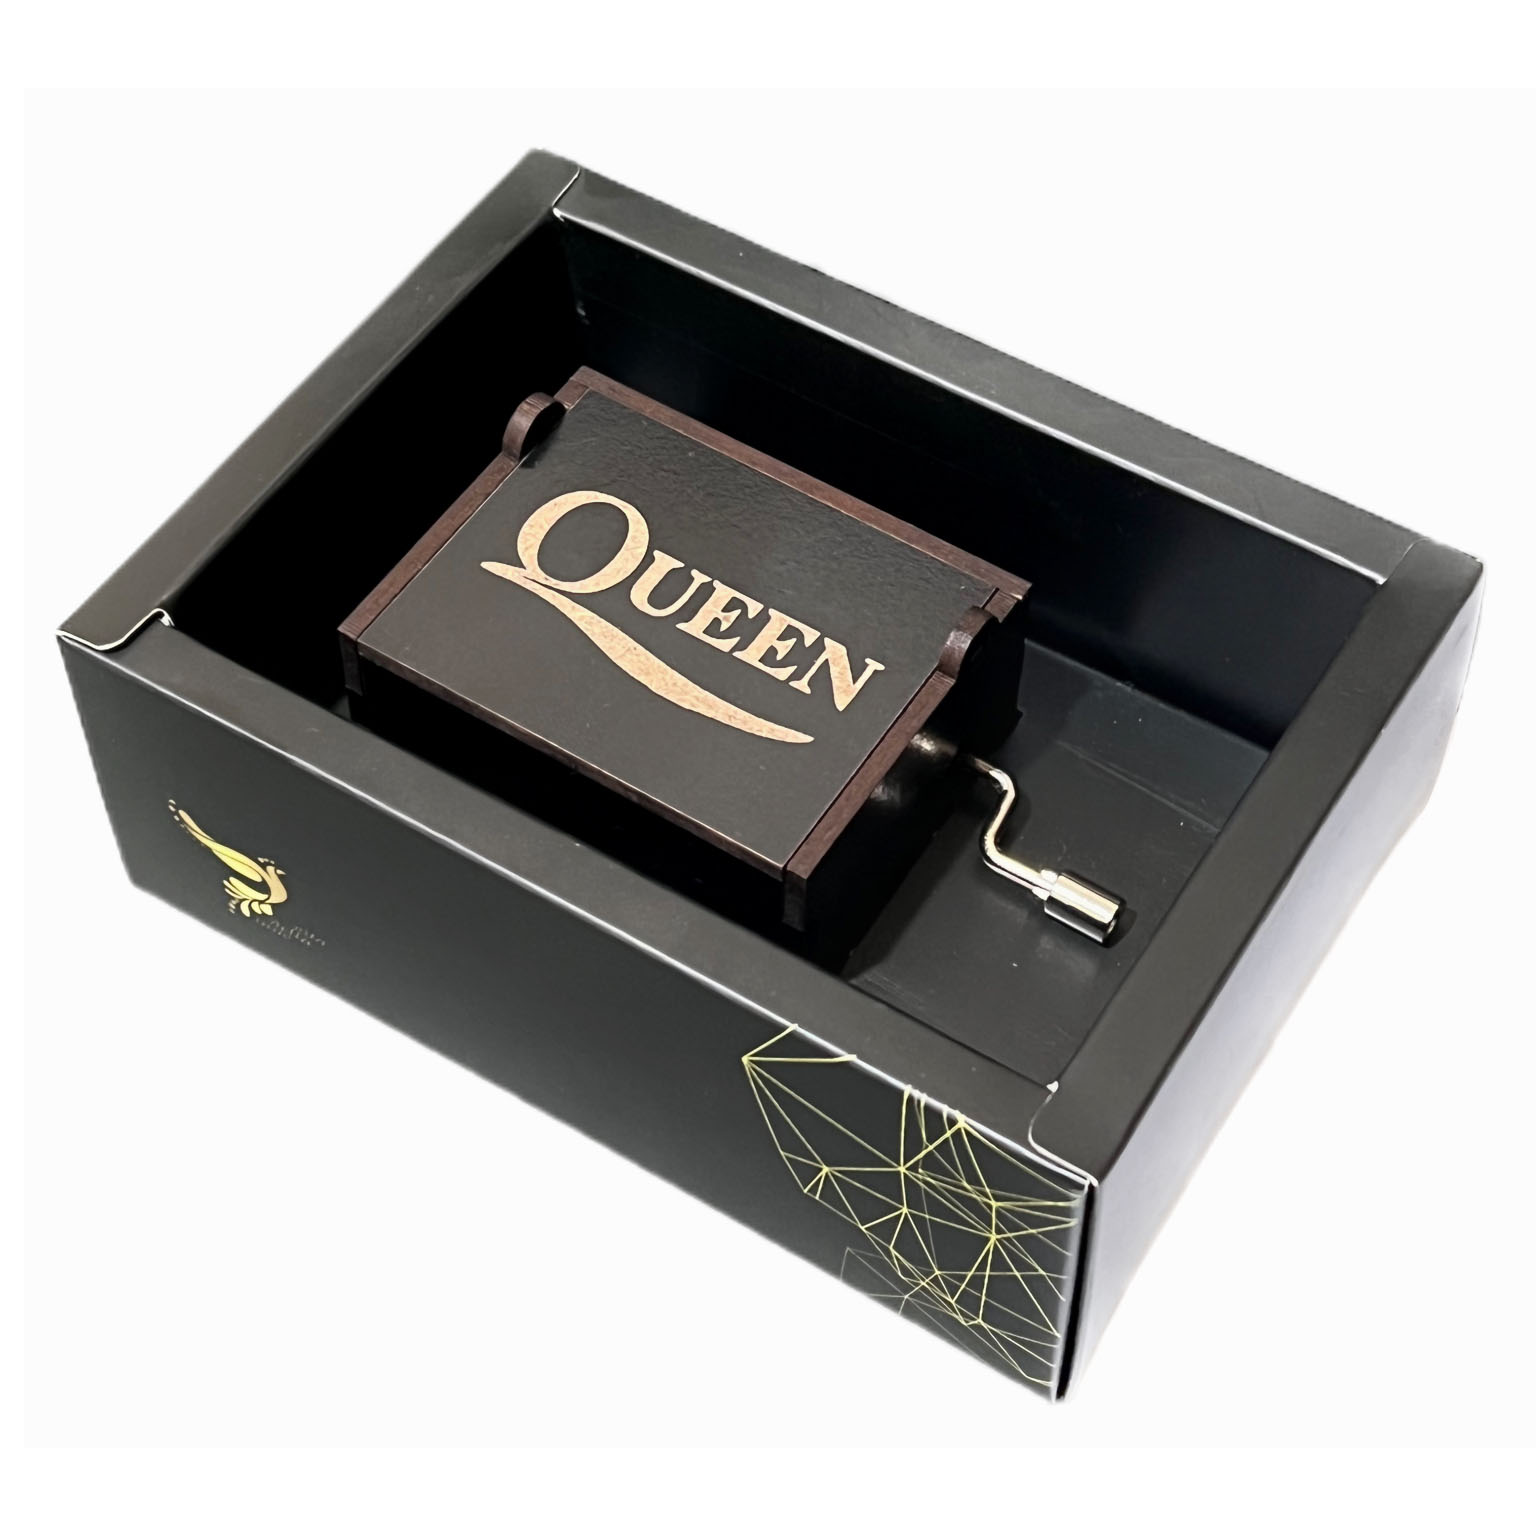 جعبه موزیکال اینو دلا ویتا مدل Arca ملودی Bohemian Rhapsody کوئین طرح Queen